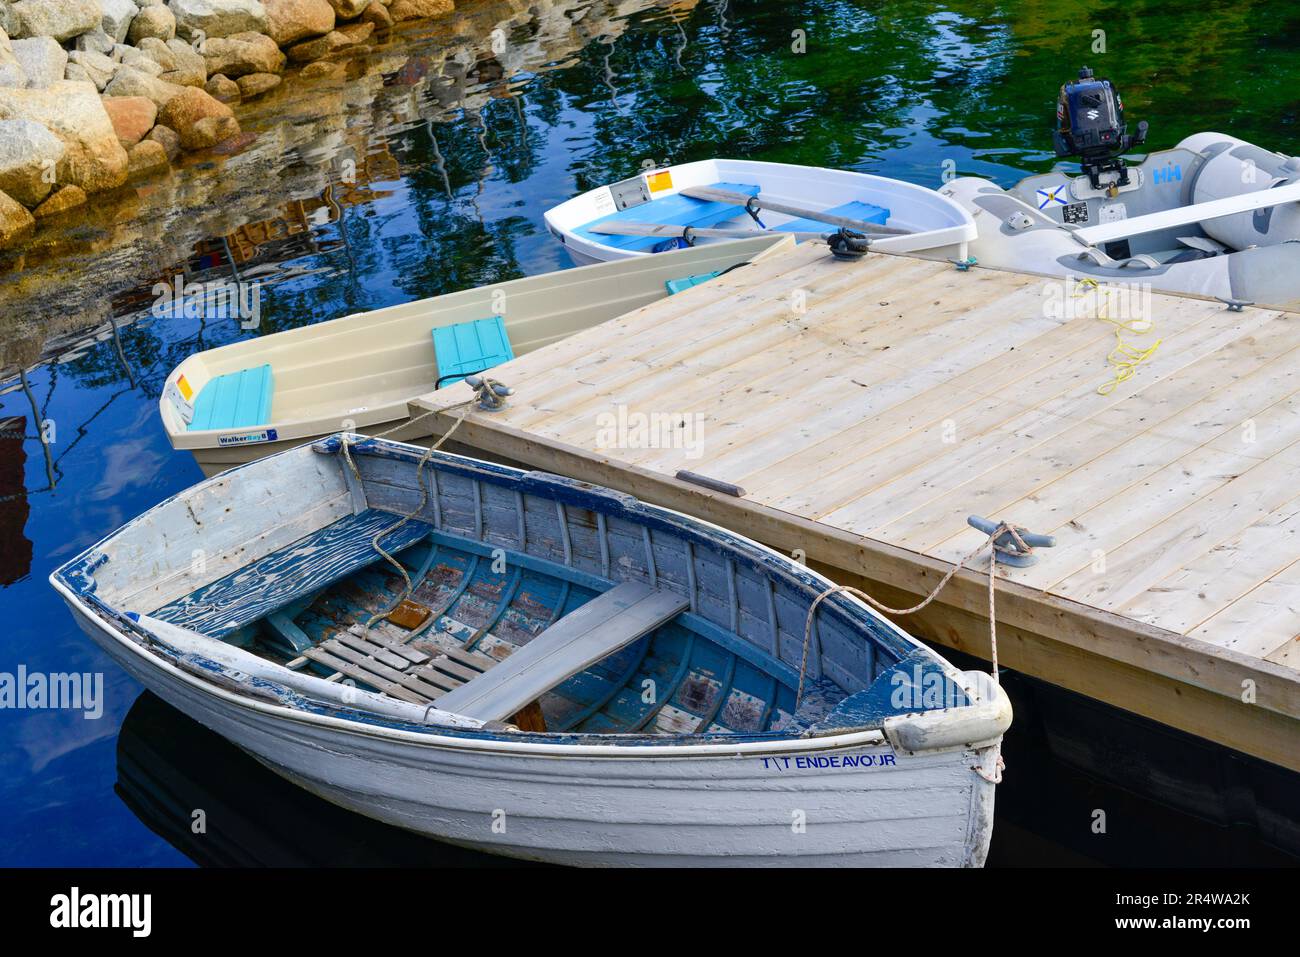 Piccole barche dixie dingy in fibra di vetro bianca ormeggiate ad un pontile galleggiante in legno. Lo skiff viene utilizzato per il trasporto come tender tra navi in un molo. Foto Stock